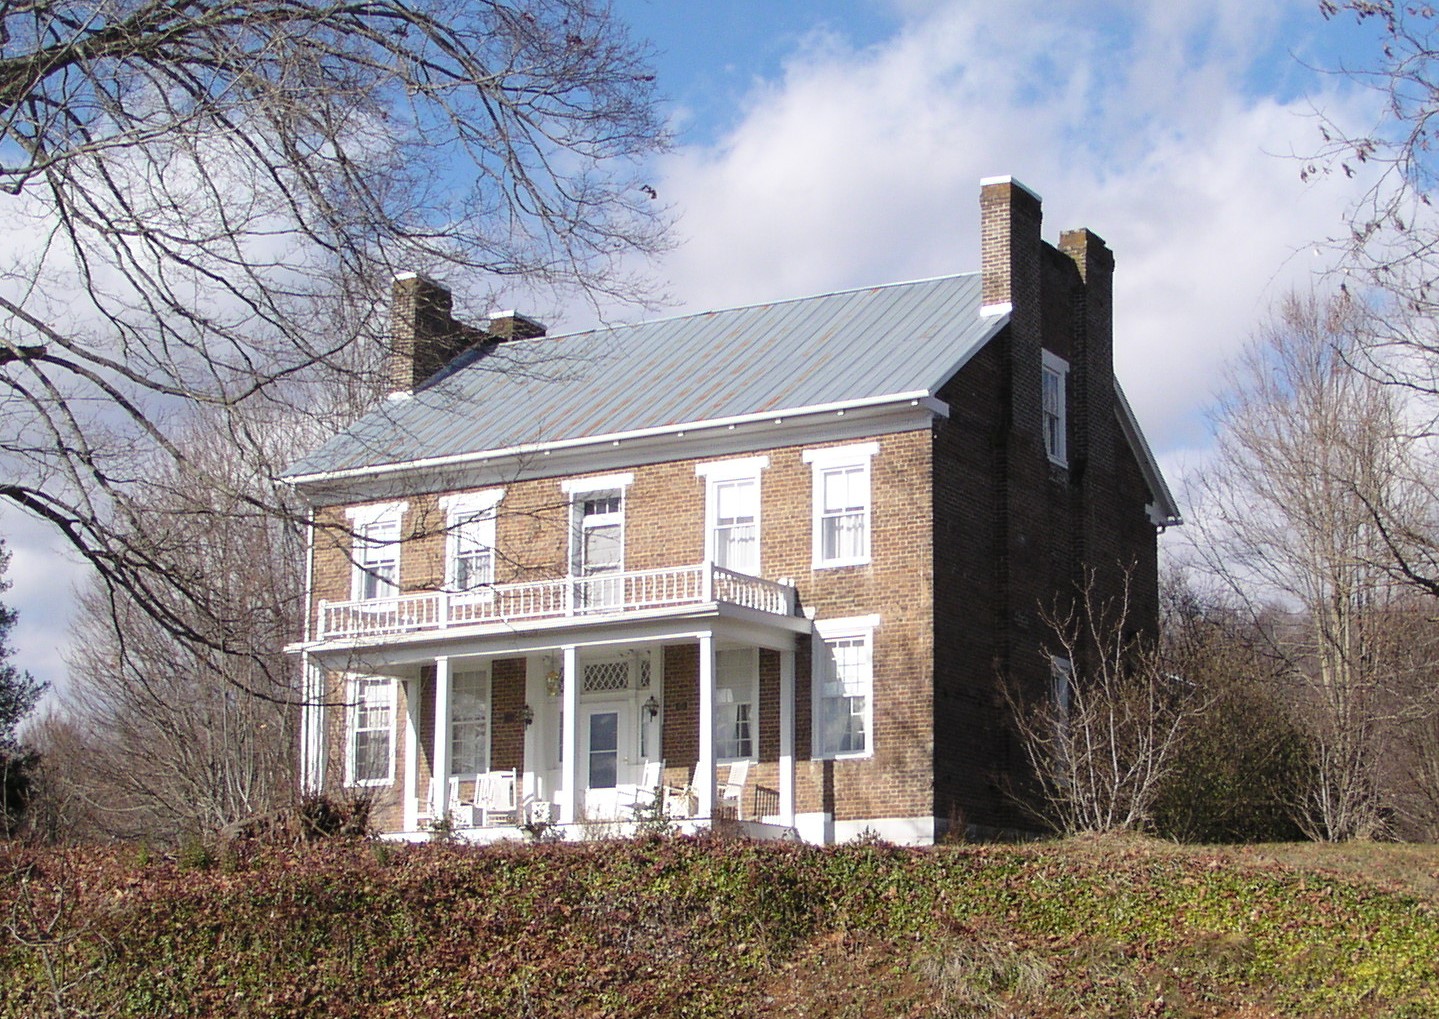 Dickinson-Milbourn House